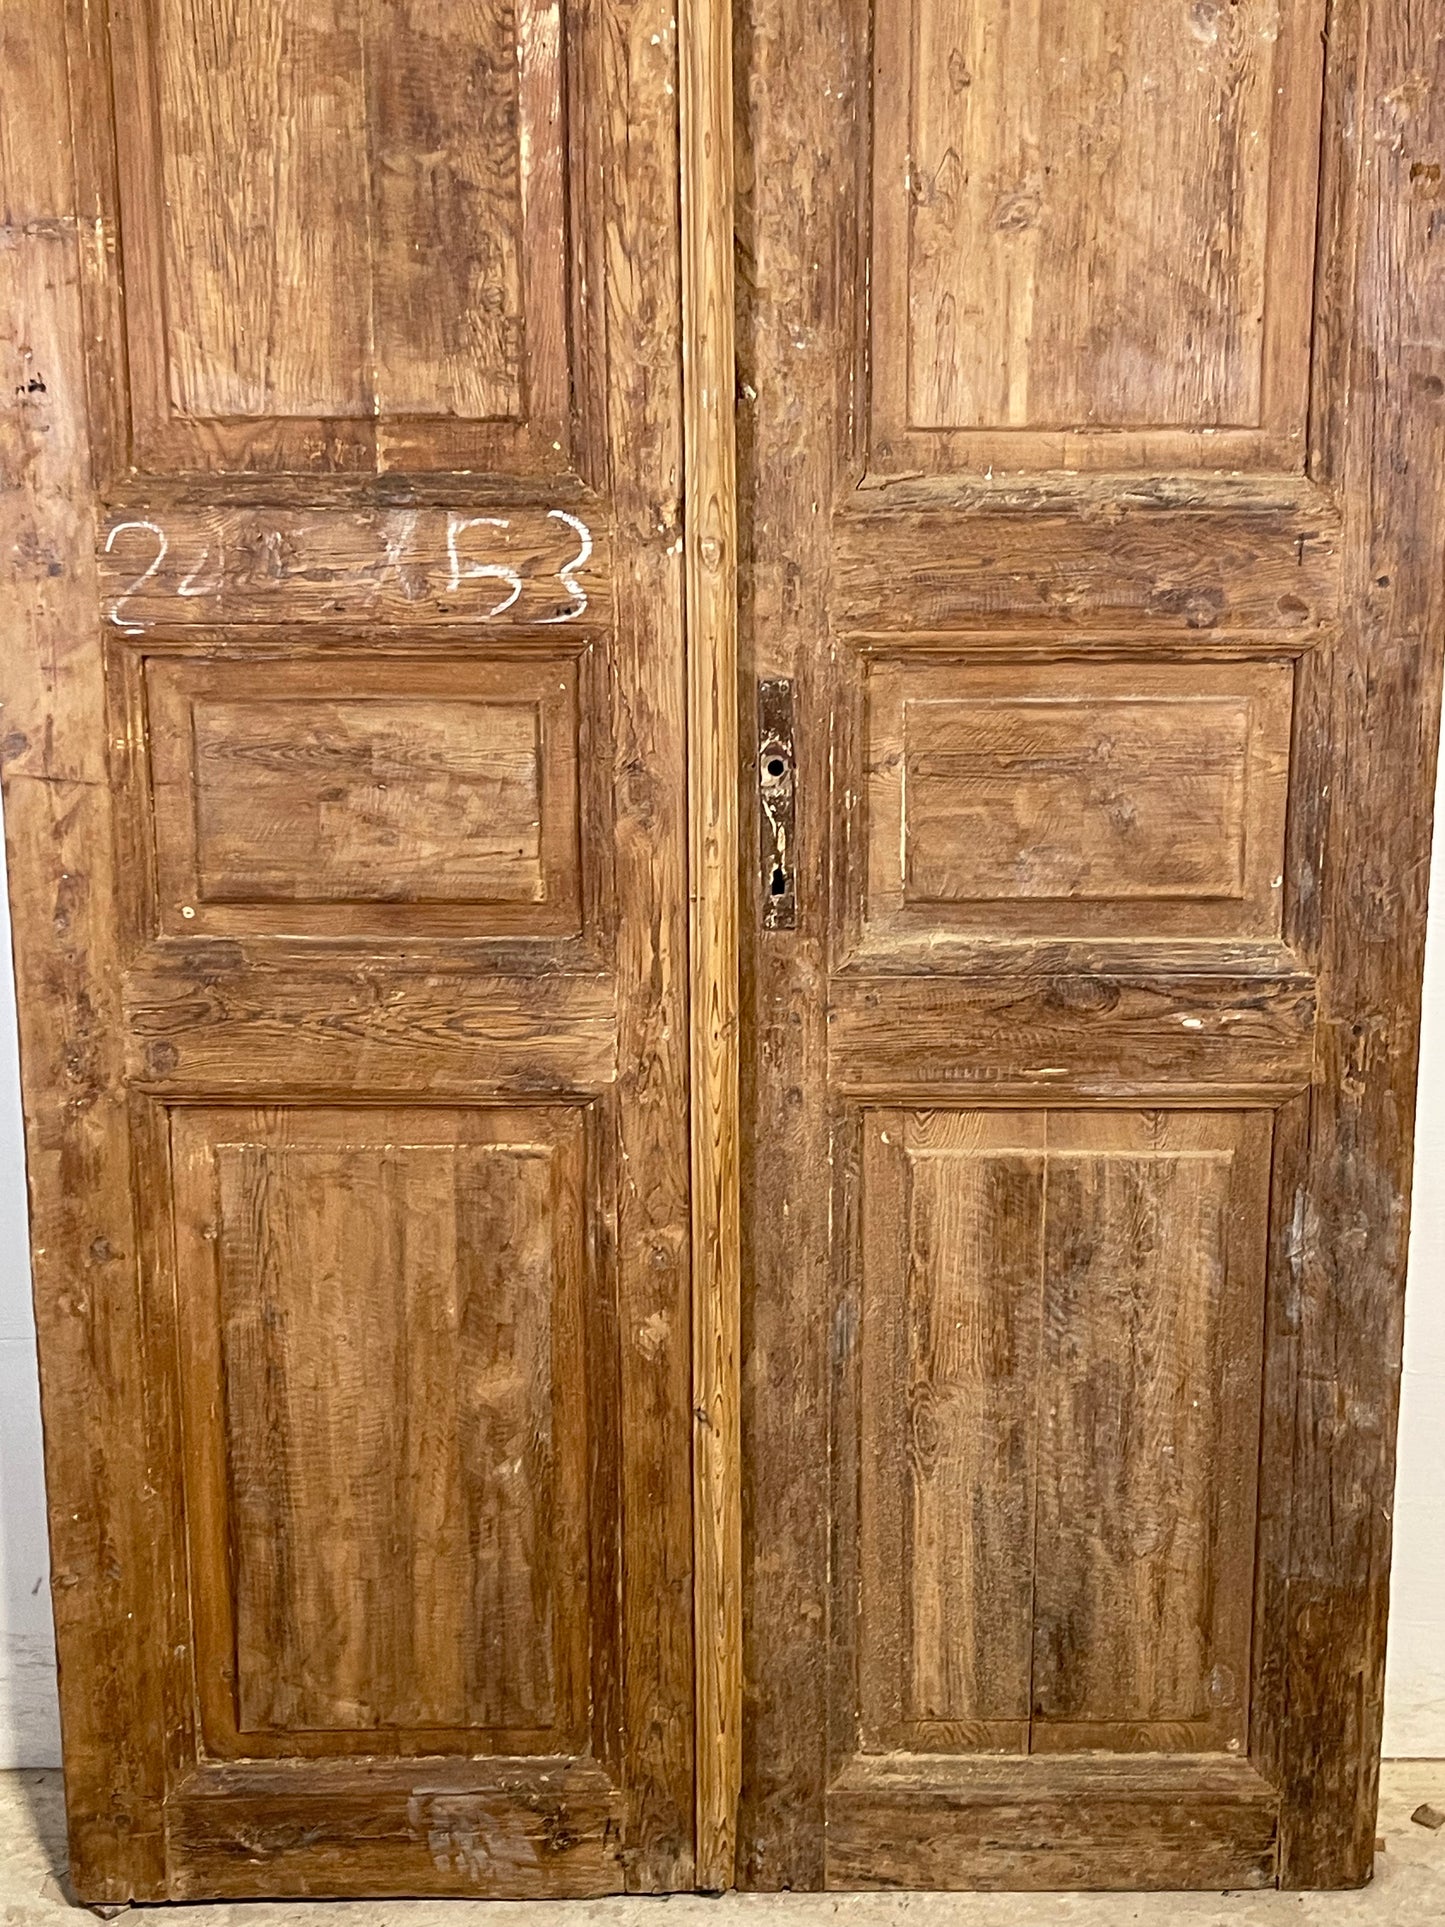 Antique French panel Doors (96.75x42.5) K713